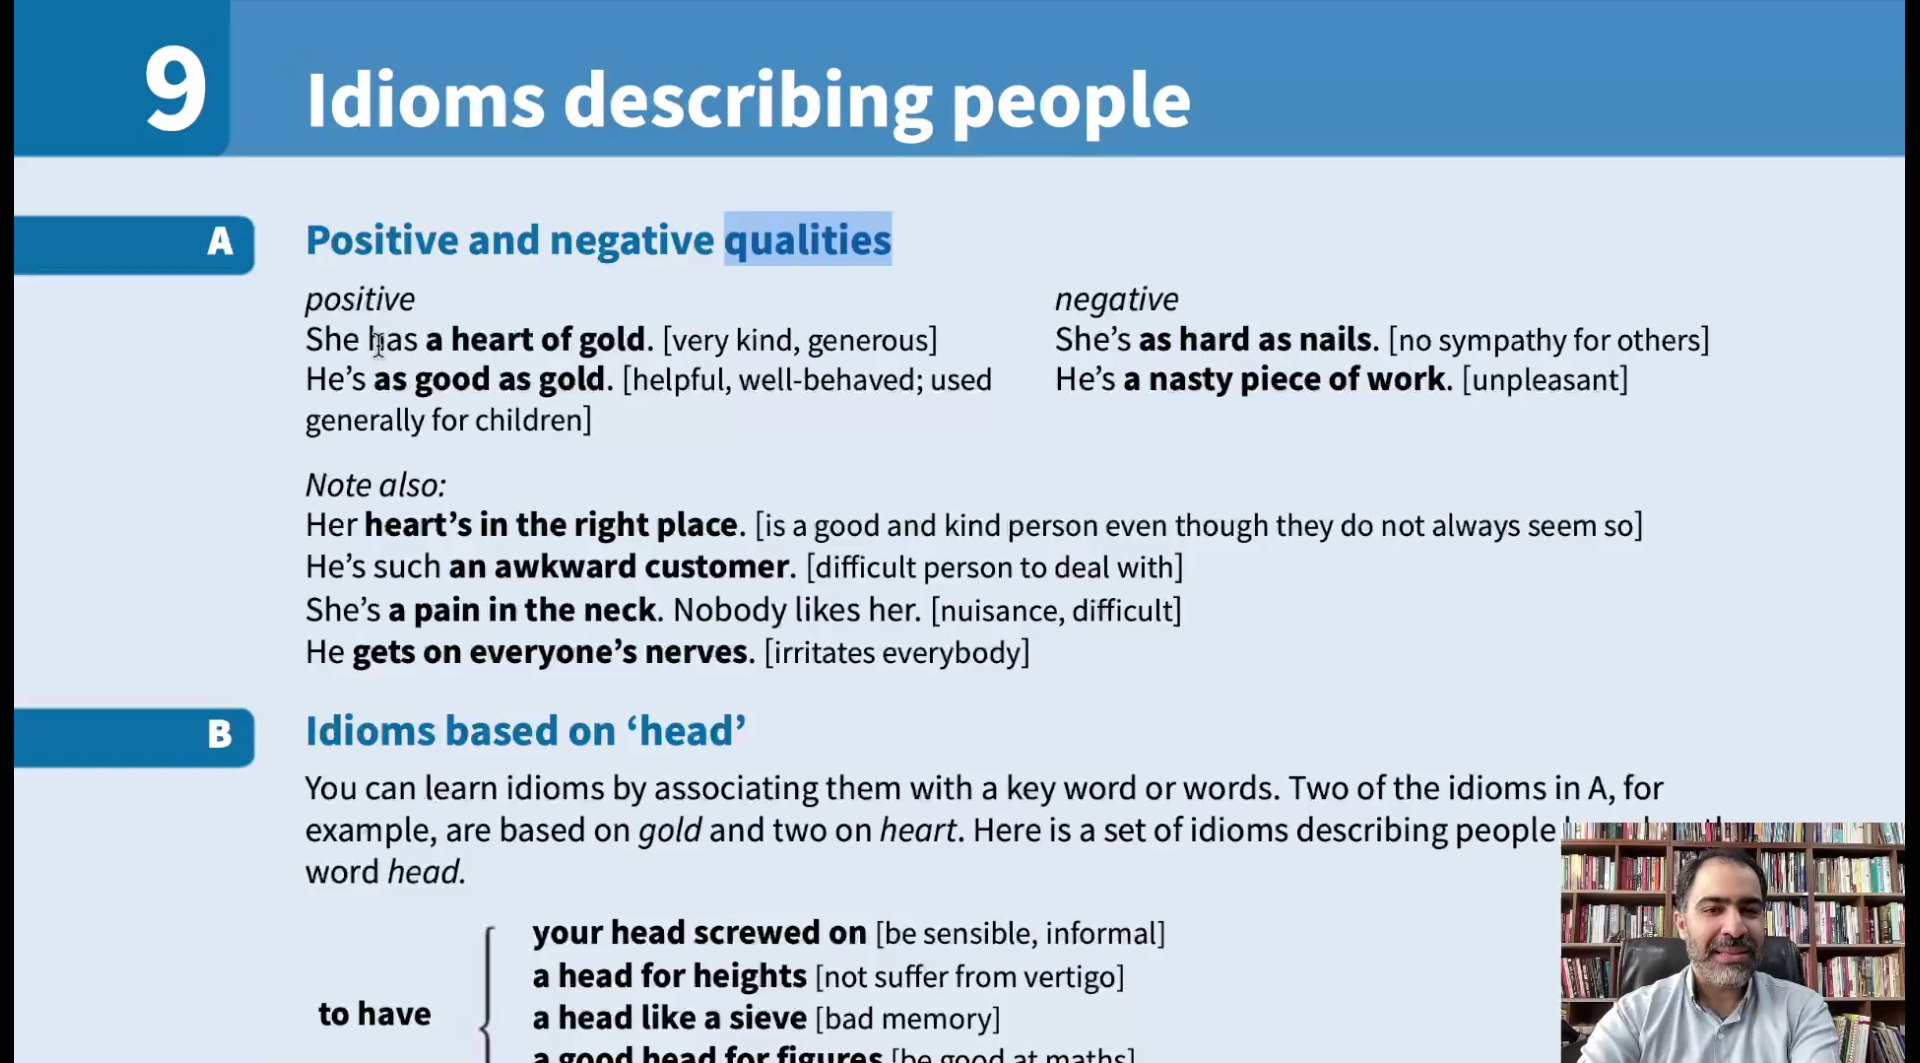 Idioms describing people